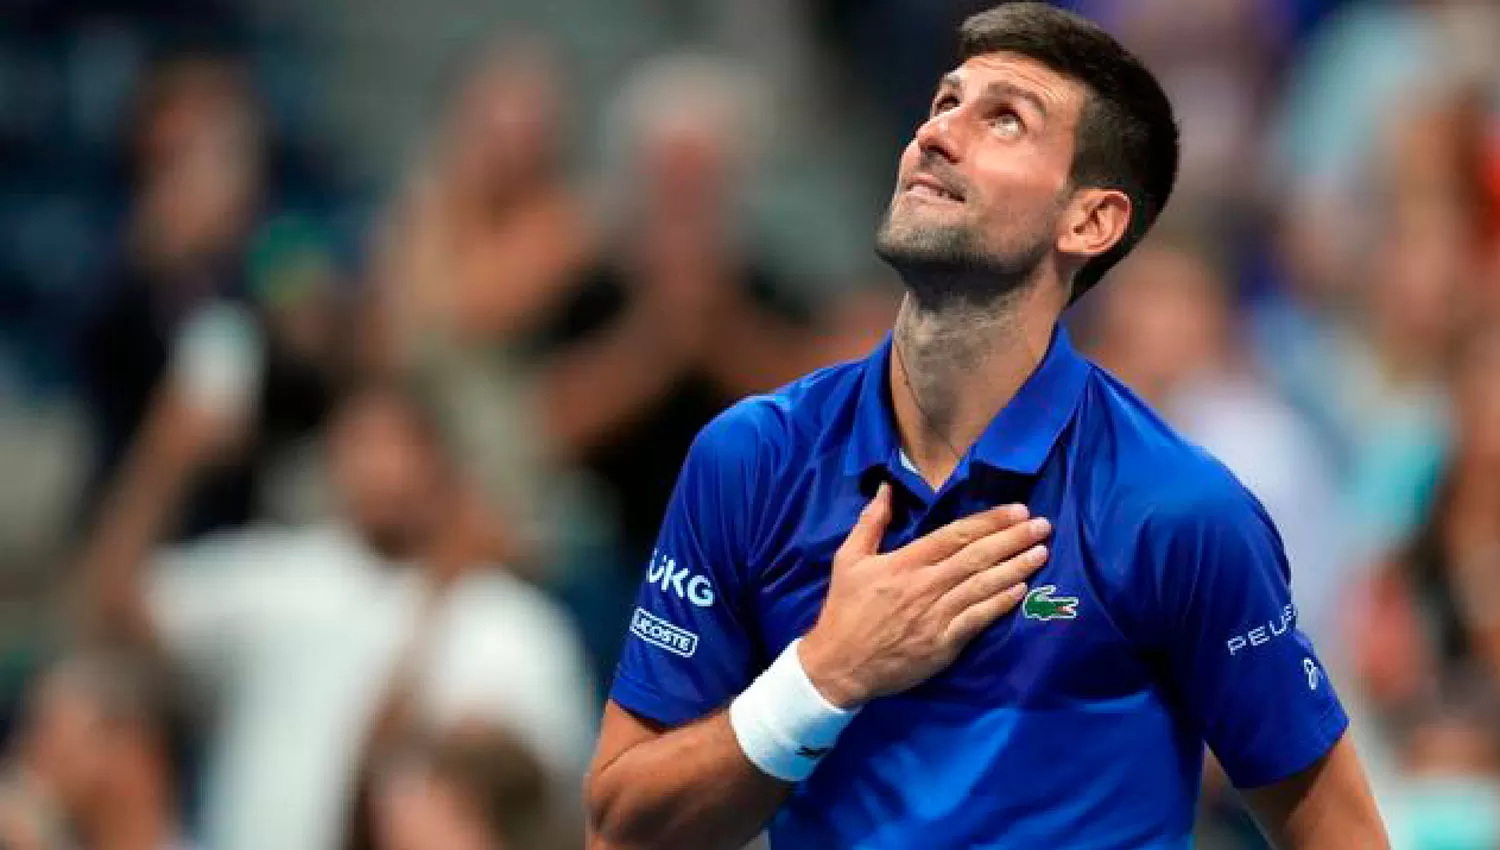 AL CIELO. Djokovic busca en el US Open su cuarto Grand Slam de la temporada.